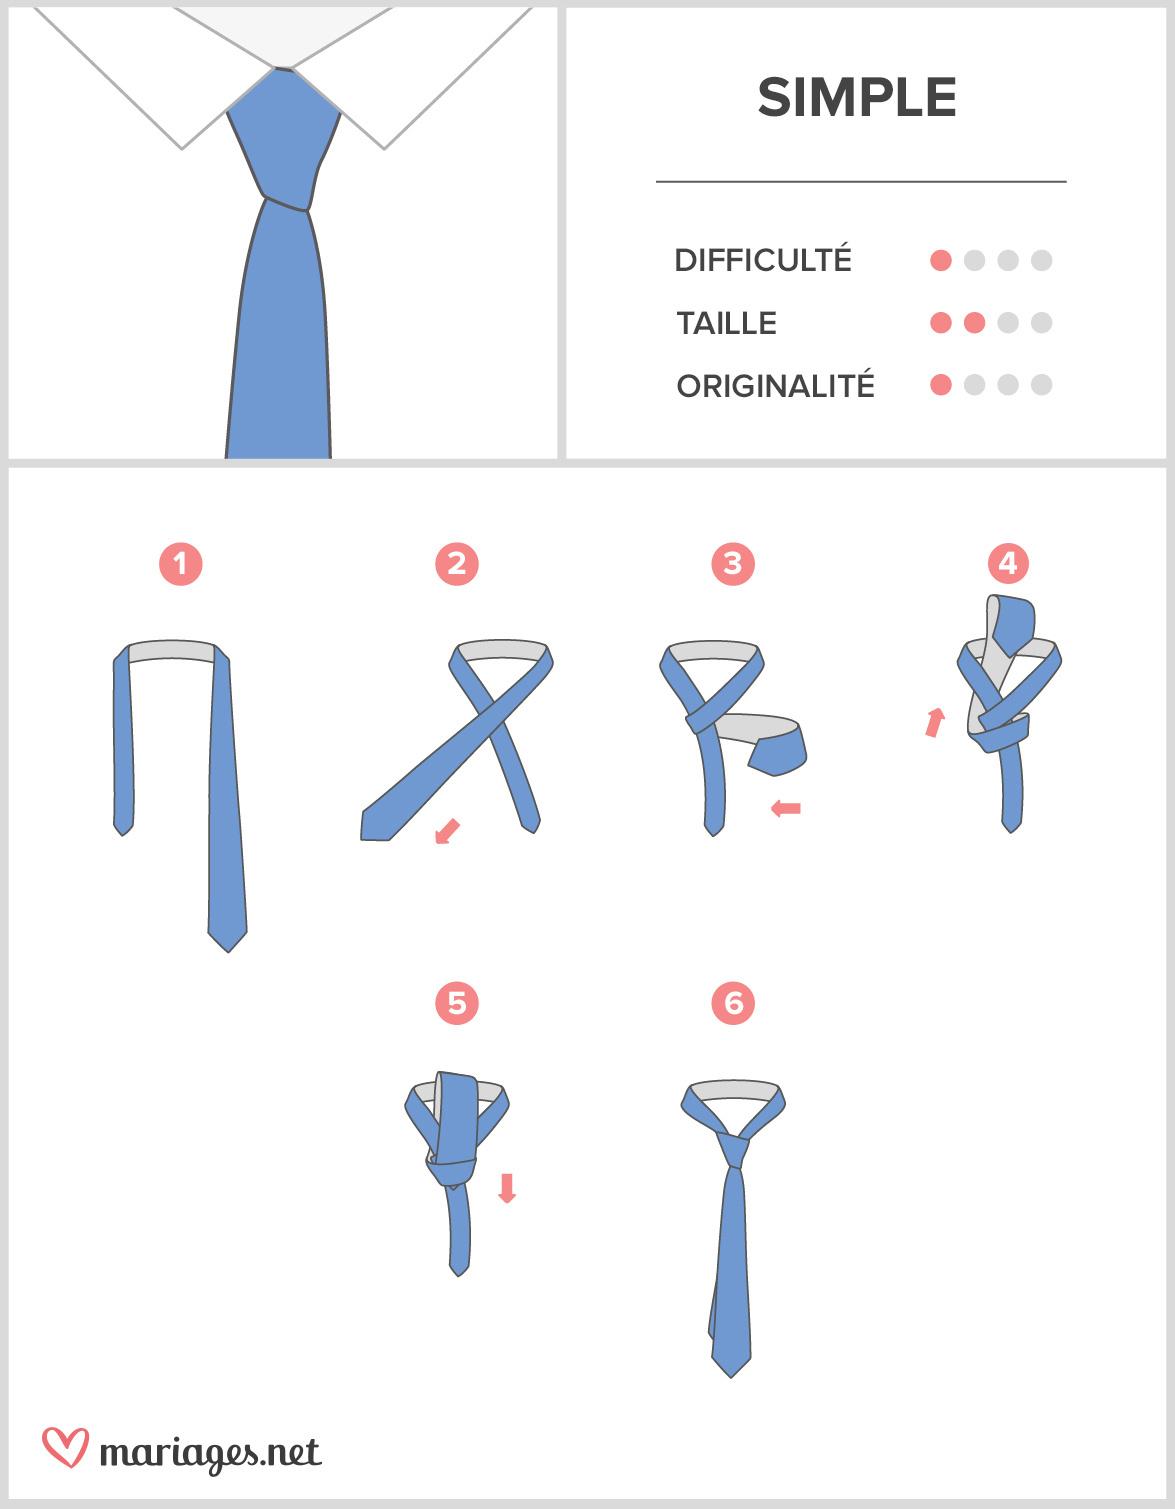 Le nœud du problème de la cravate